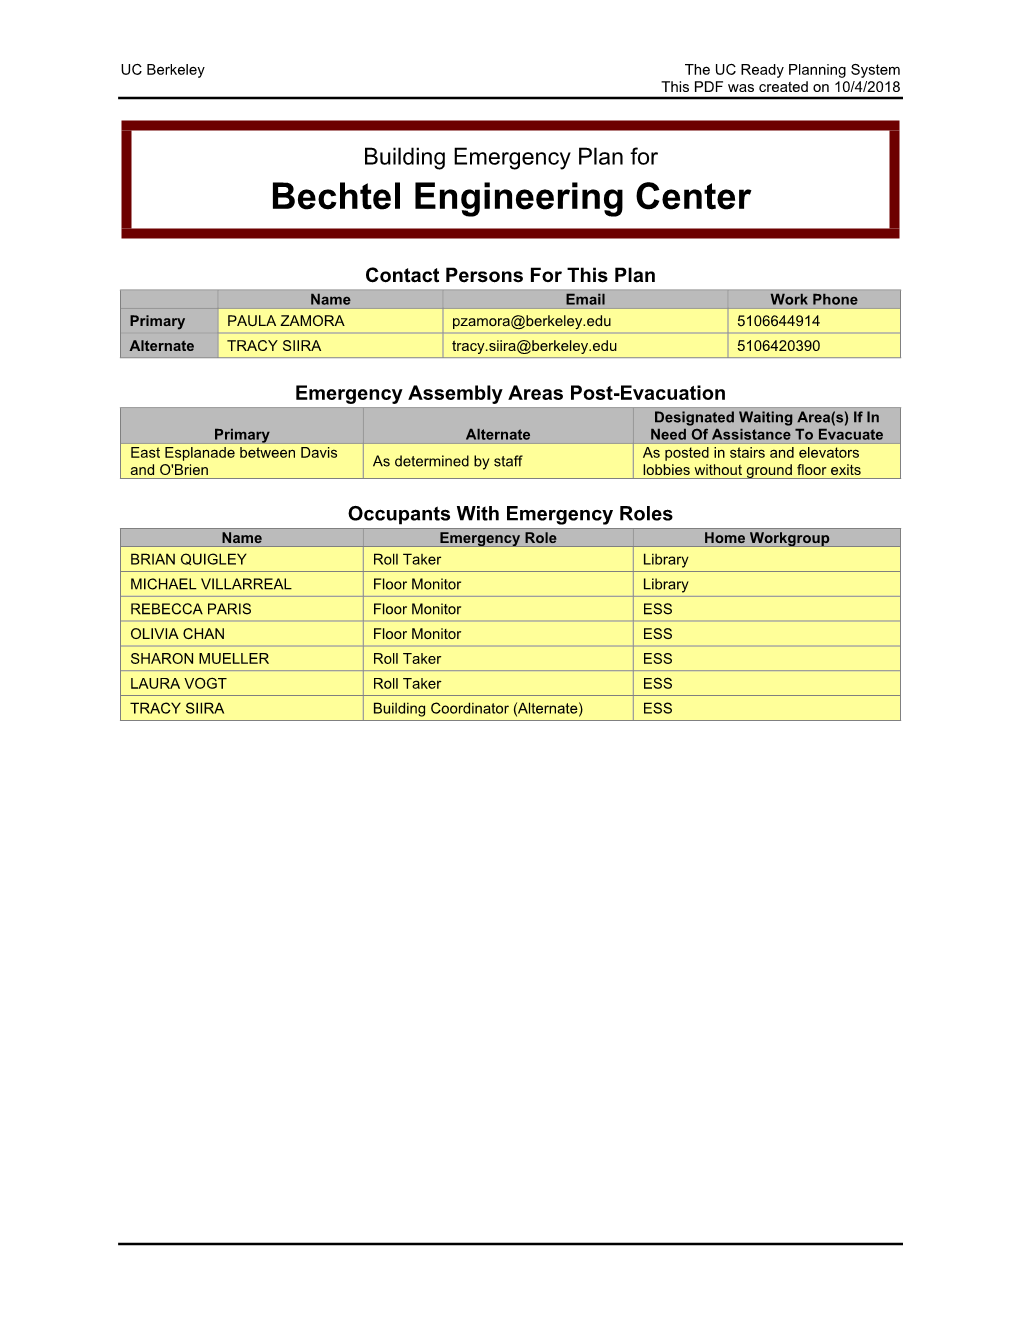 Bechtel Engineering Center